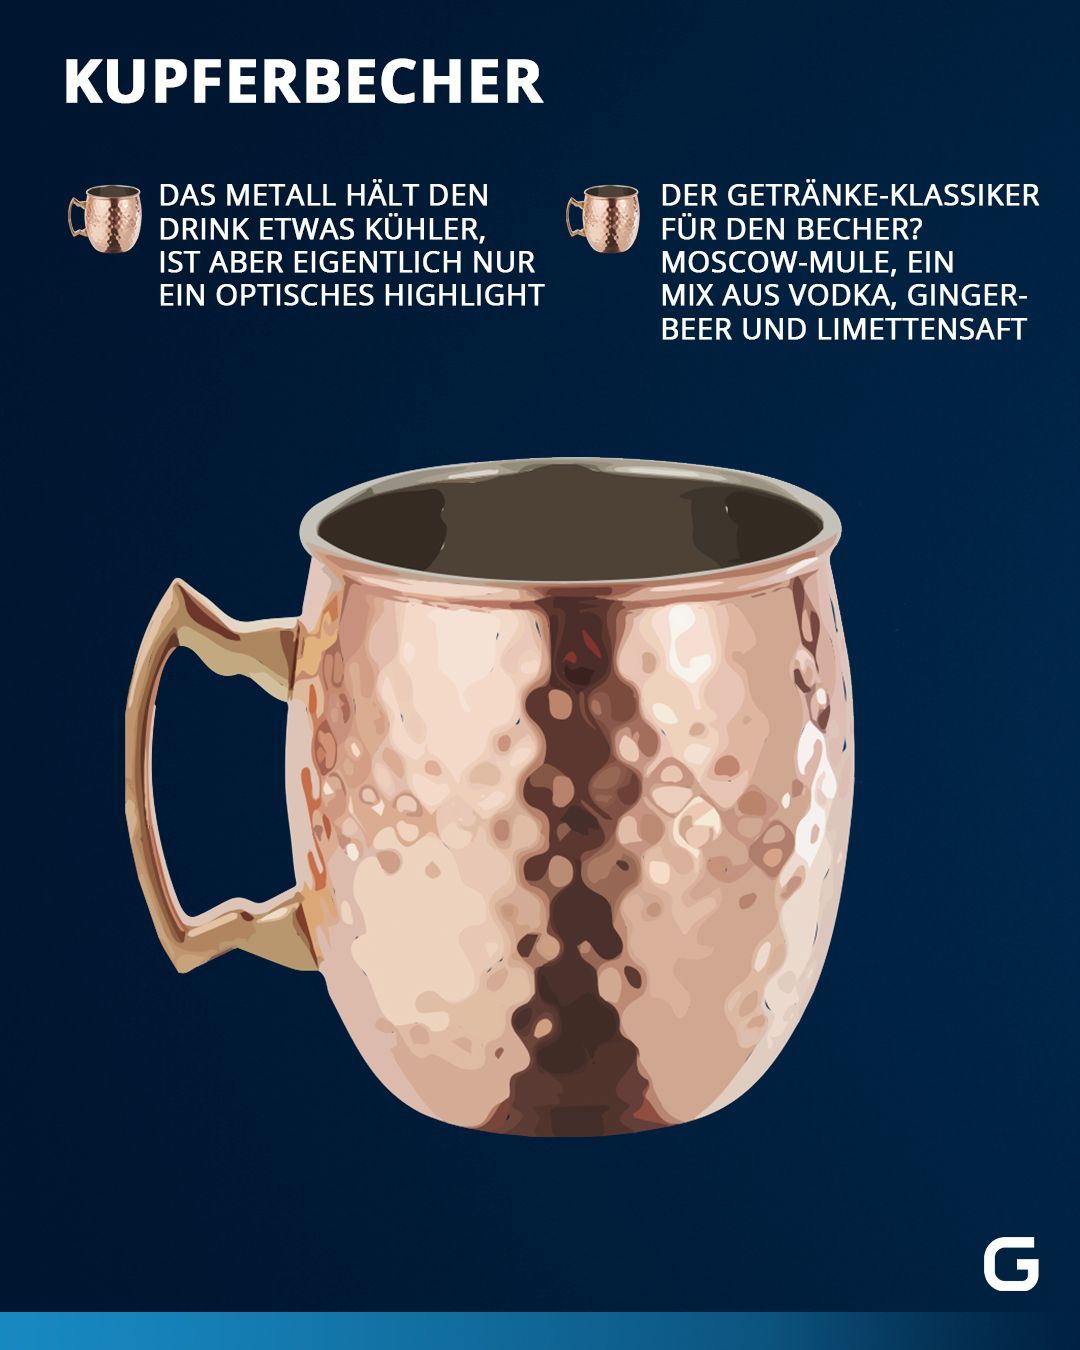 Eine kurze Übersicht über verschiedene Cocktailgläser - Kupferbecher